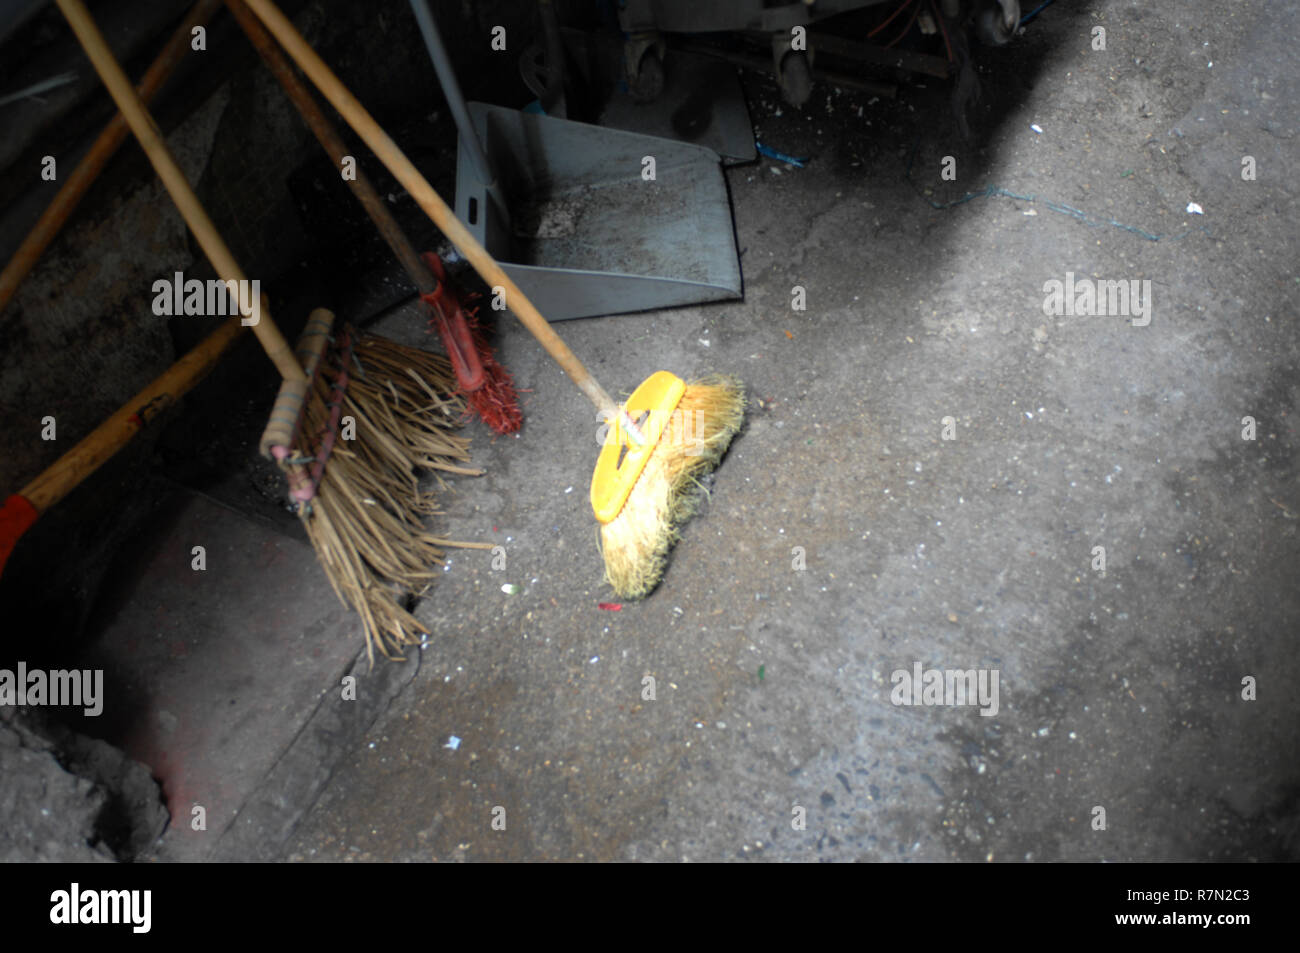 Broom and mop, Hong Kong, China Stock Photo - Alamy